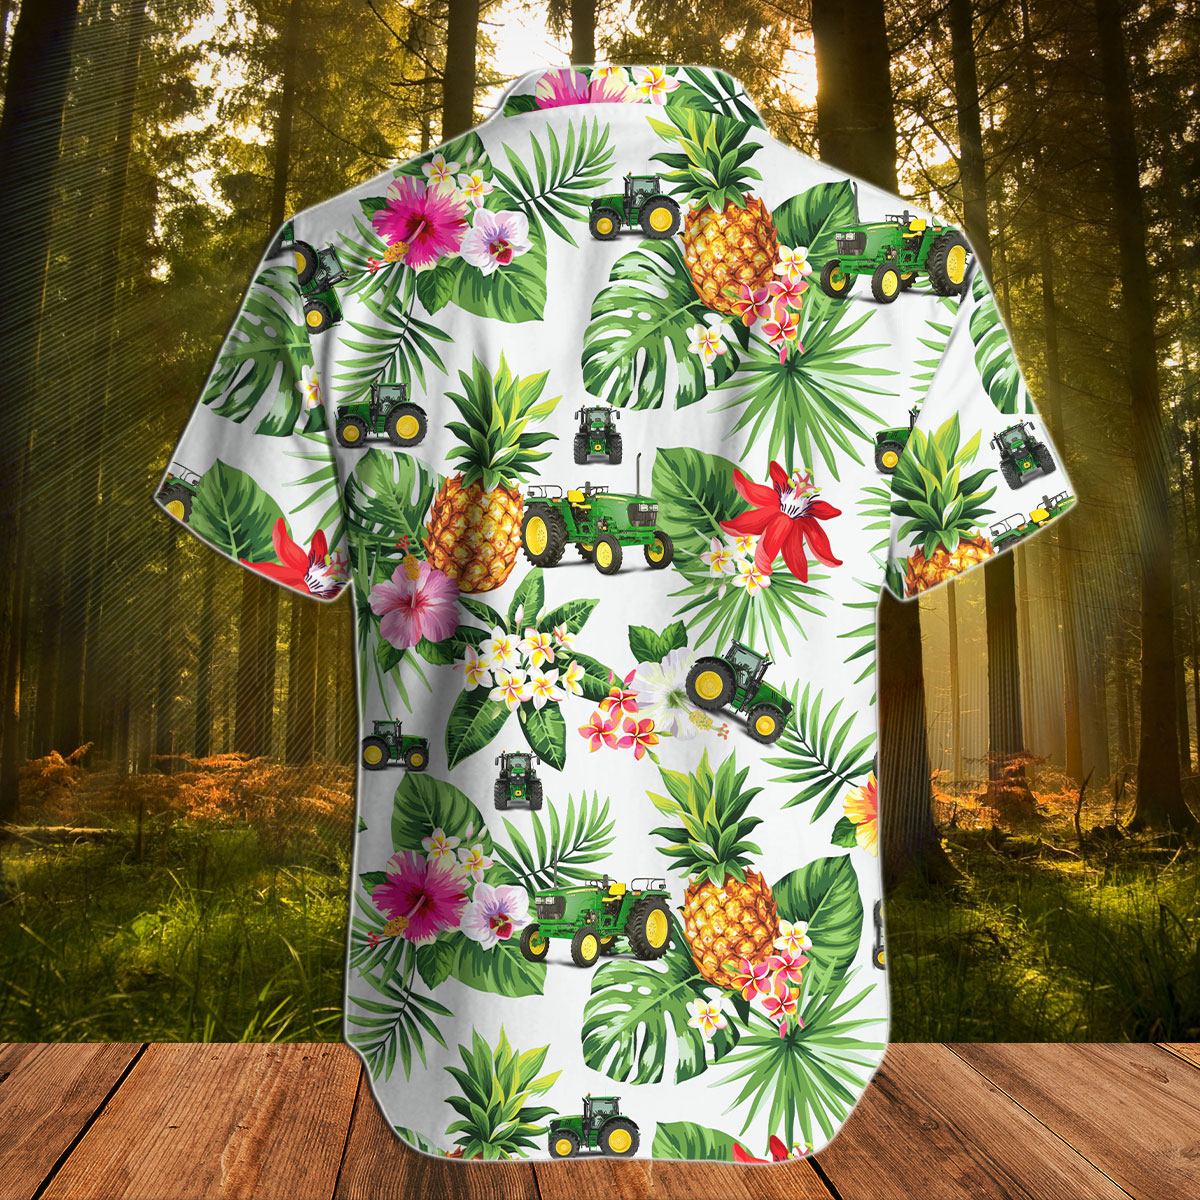 Tractor pineapple hawaiian shirt3